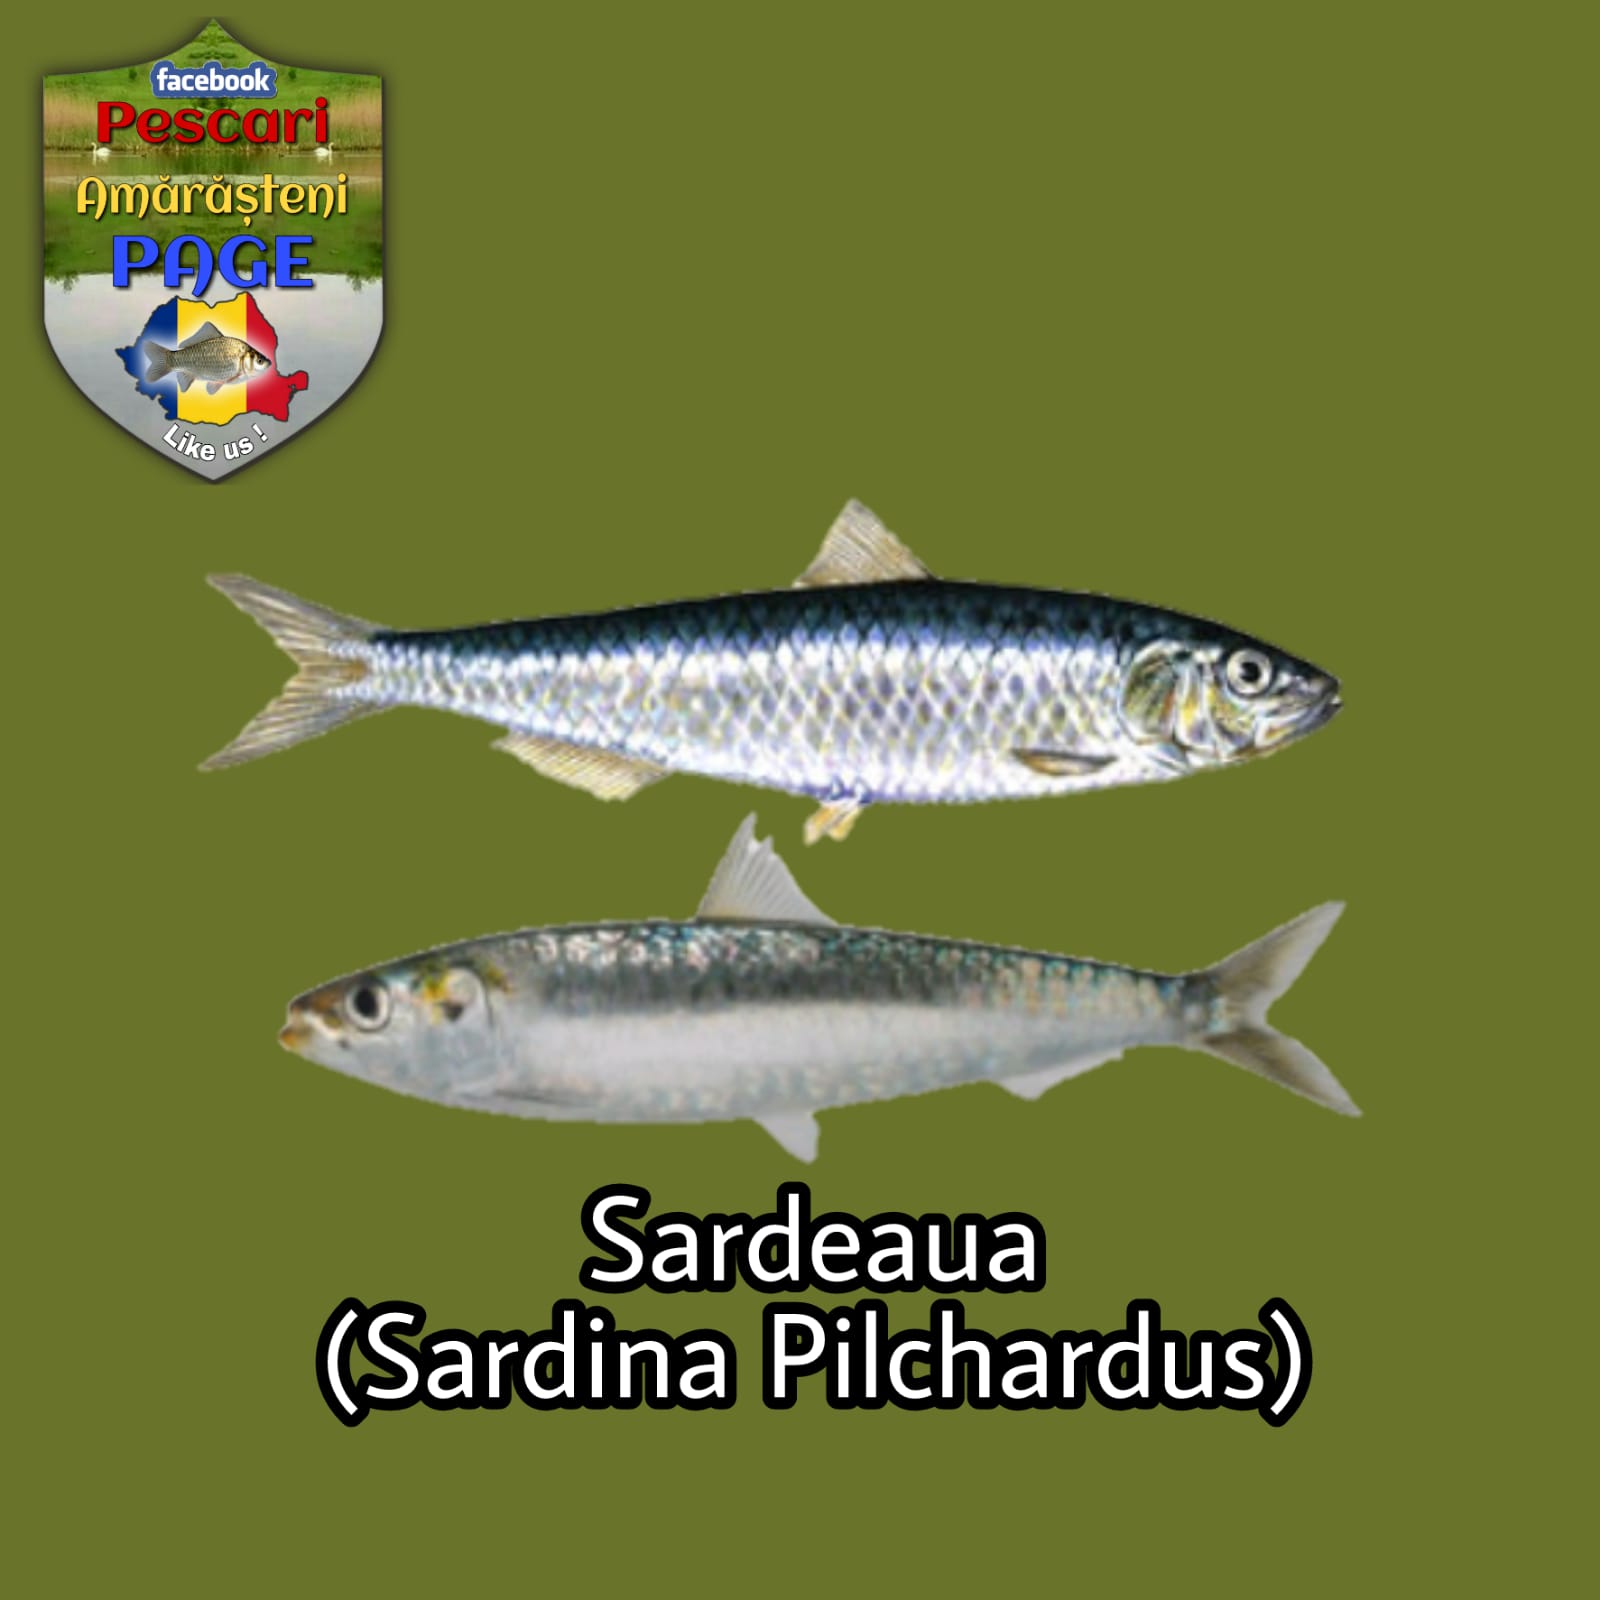 Sardeaua/sardina (Sardina pilchardus)